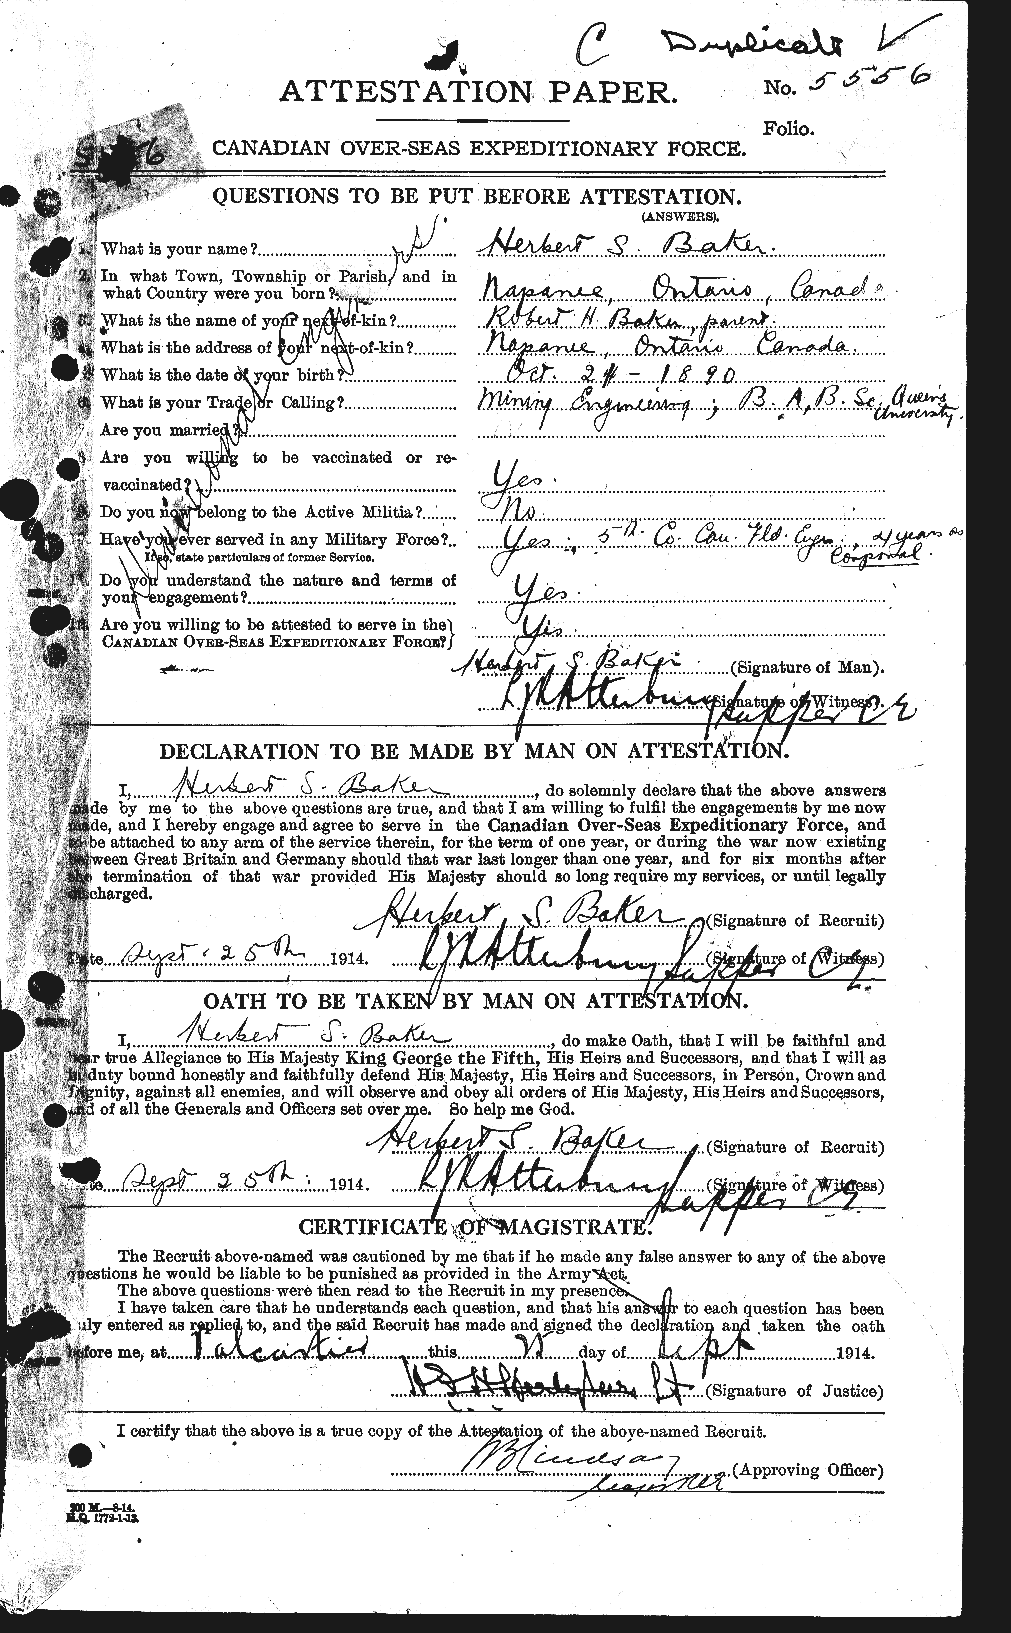 Dossiers du Personnel de la Première Guerre mondiale - CEC 216109a